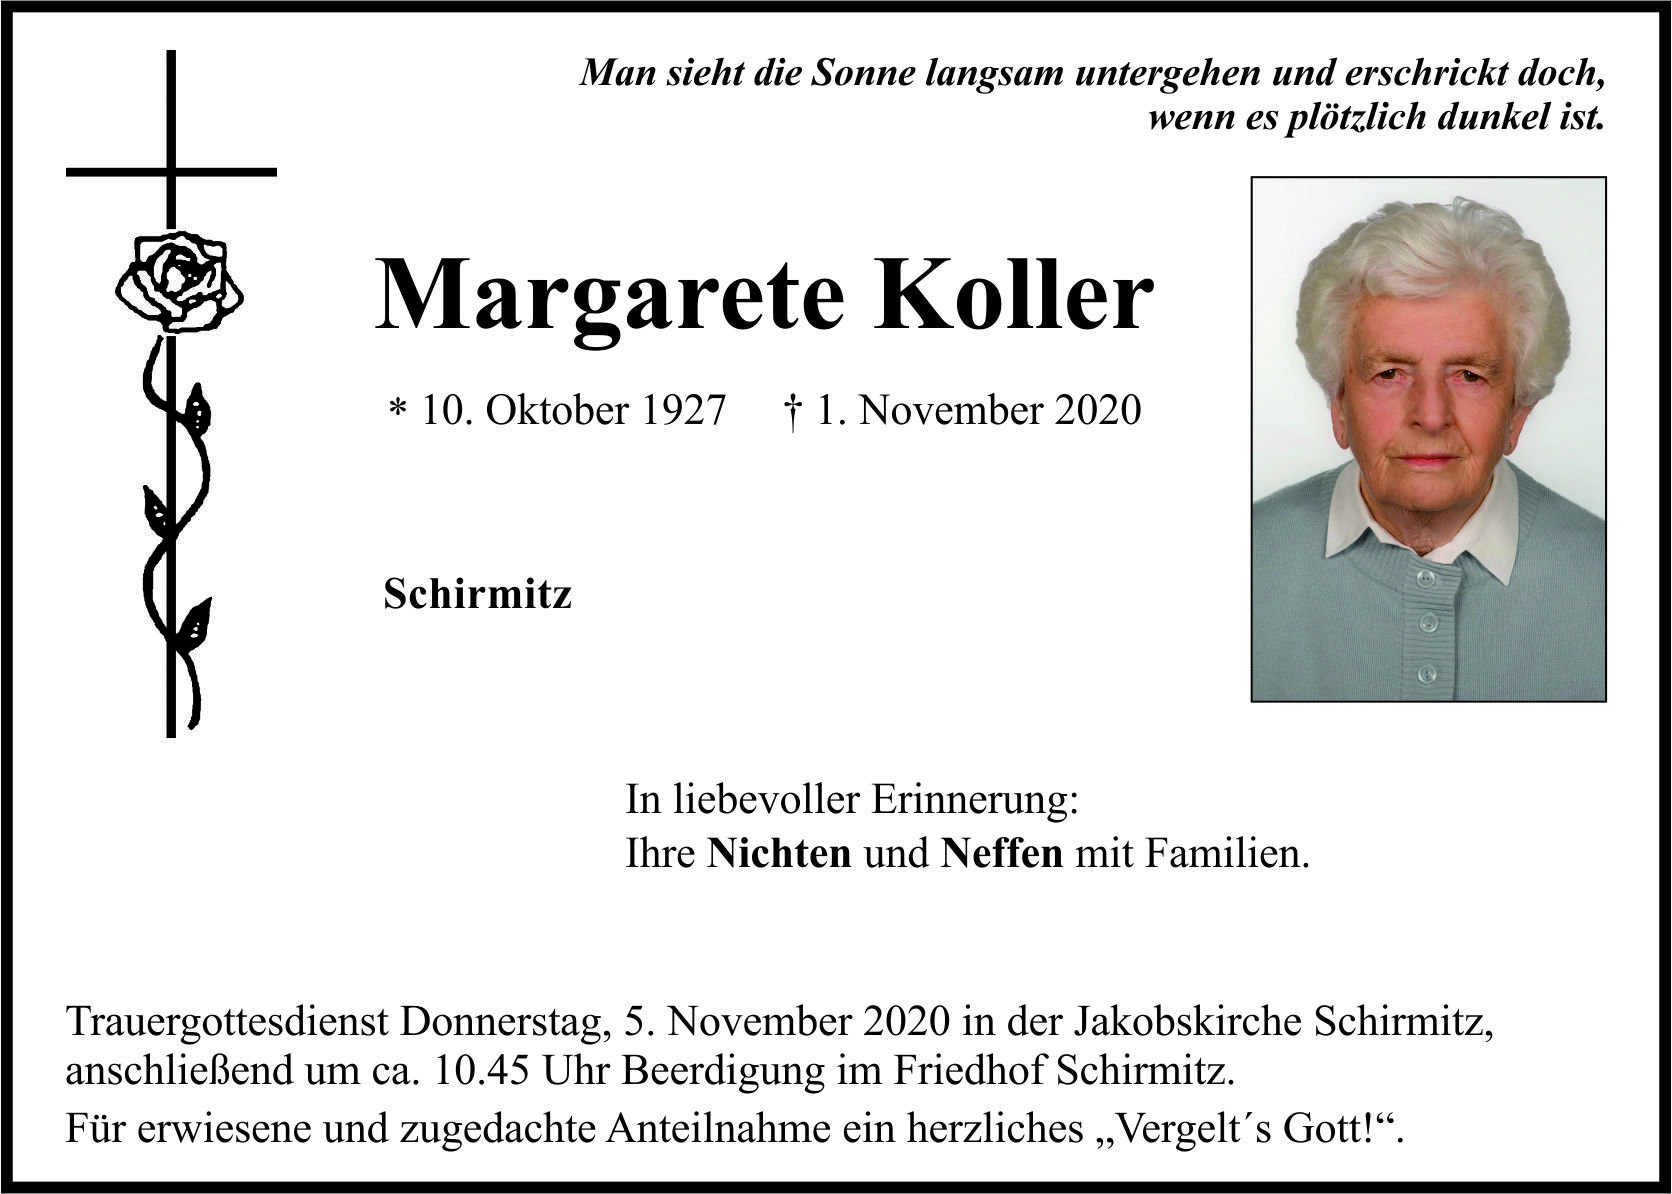 Traueranzeige Margarete Koller, Schirmitz